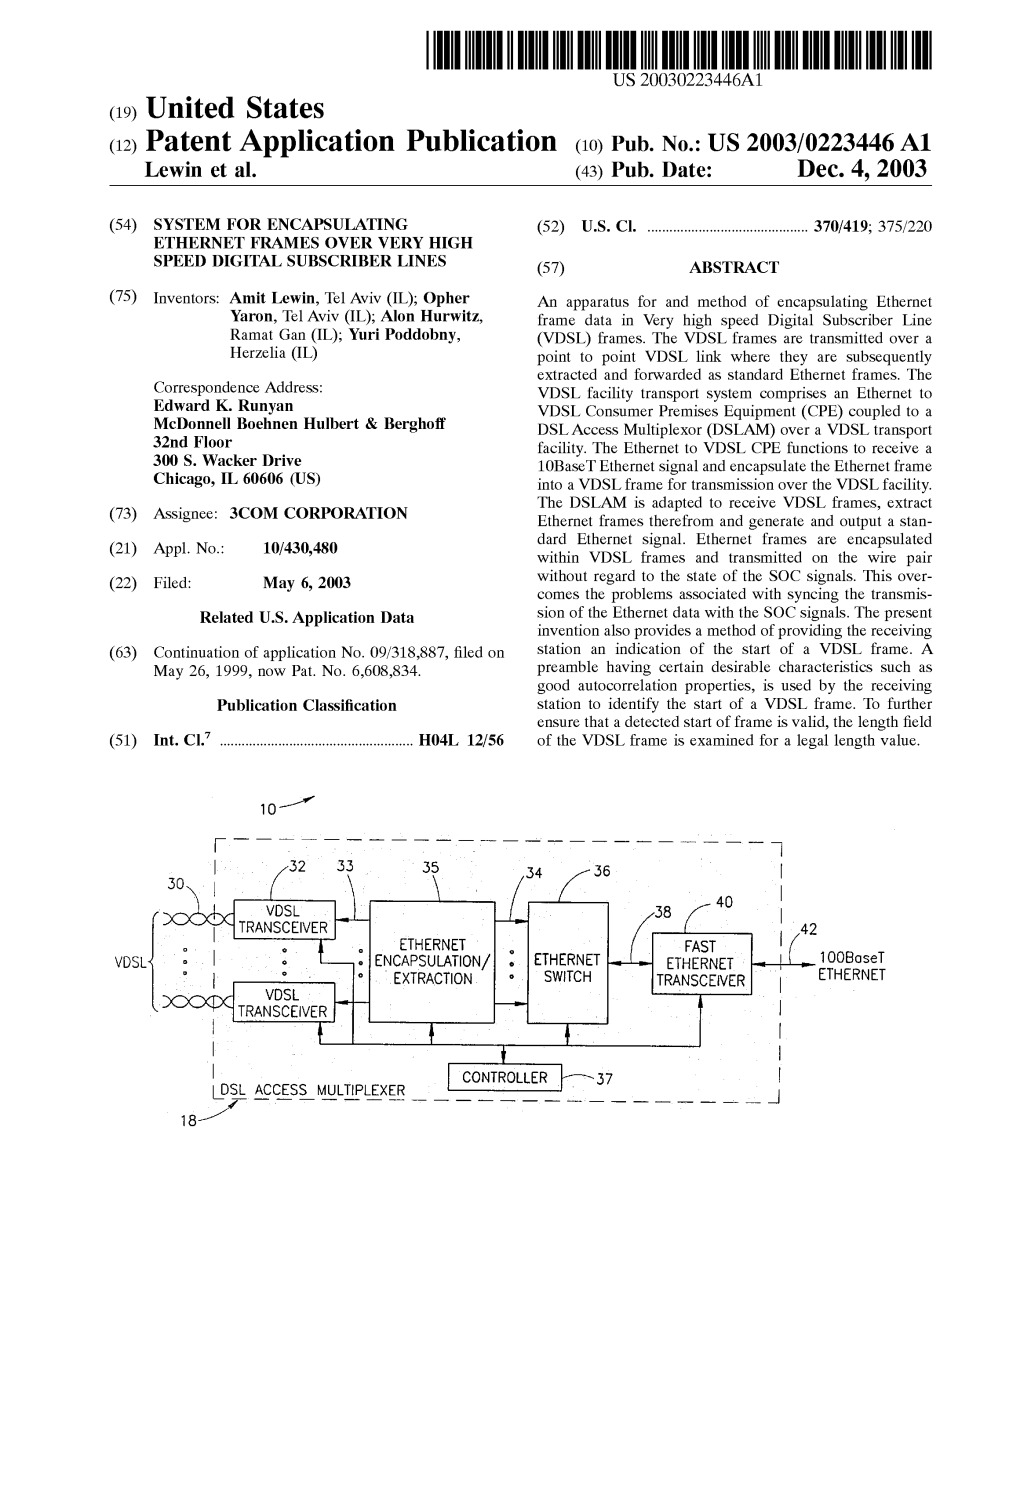 (12) Patent Application Publication (10) Pub. No.: US 2003/0223446A1 Lewin Et Al